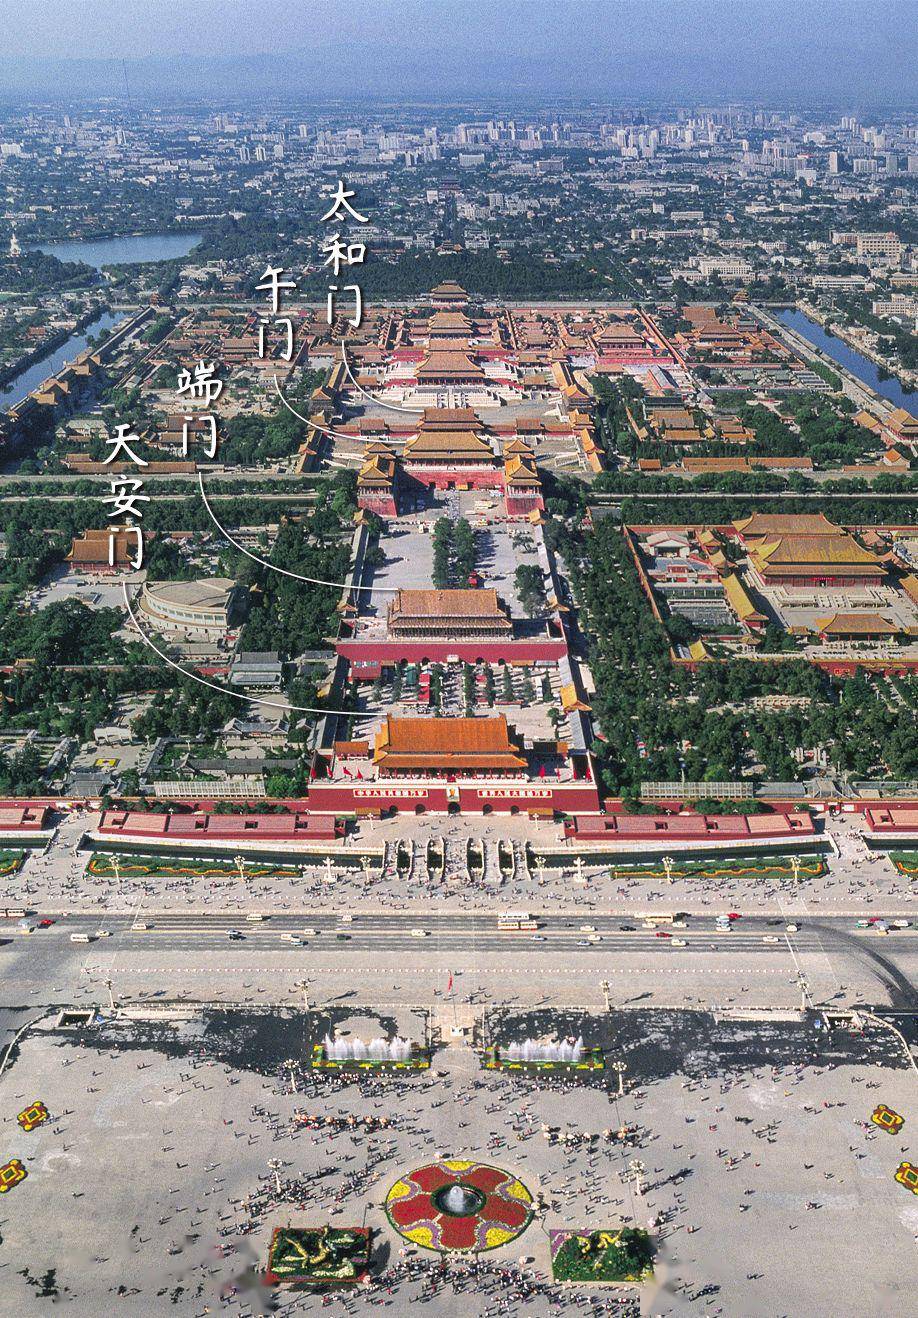 什么是北京四合院?